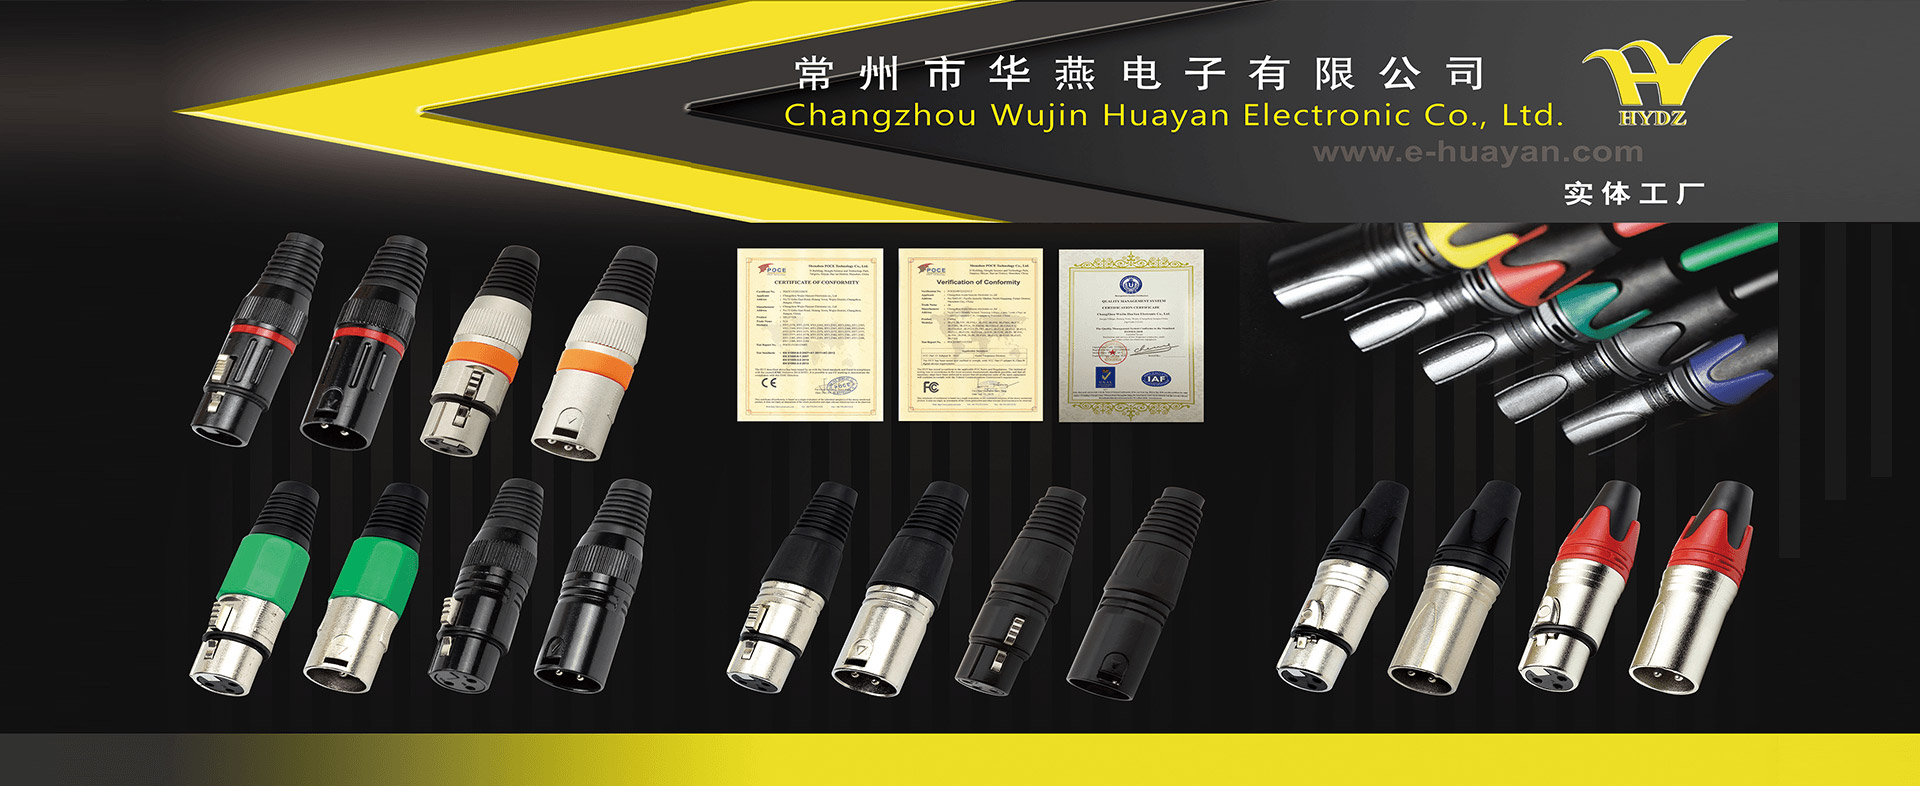 Changzhou Wujin Huayan Electronic Co., LTD